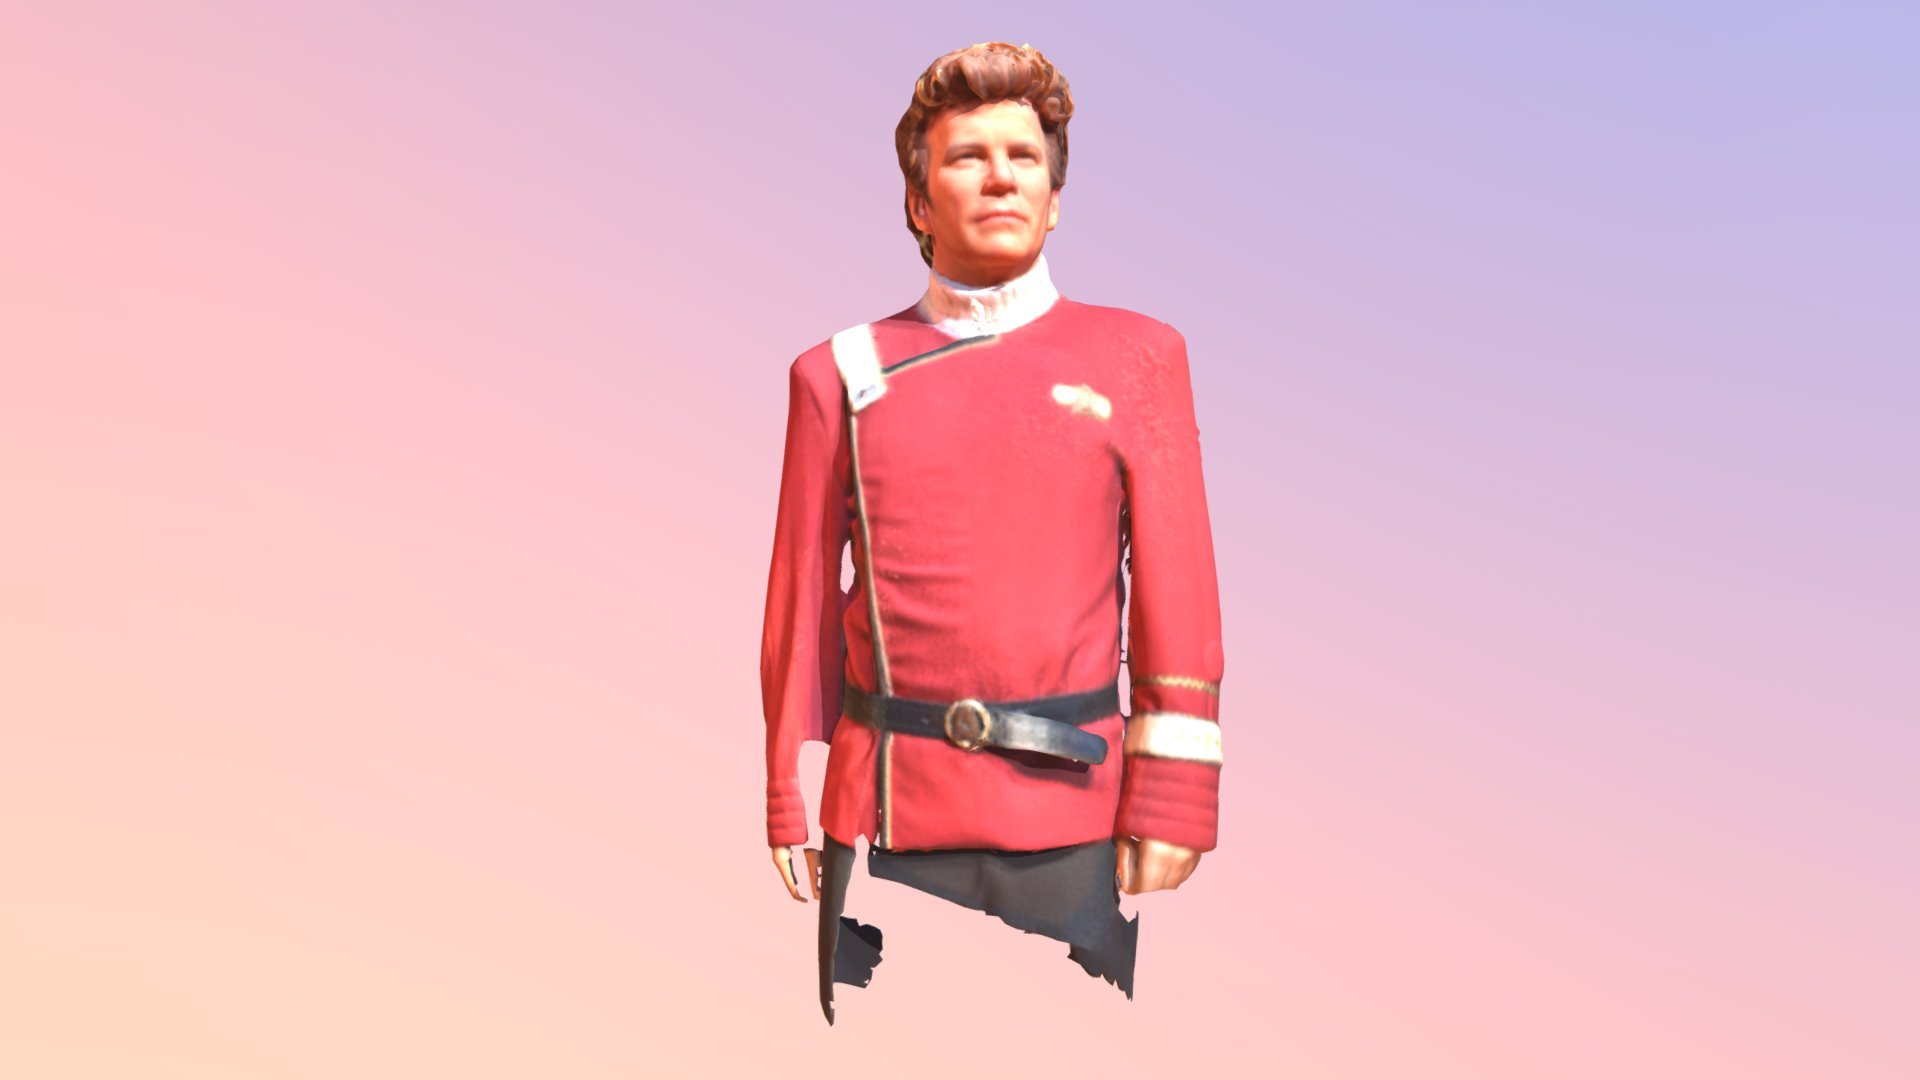 William Shatner (Captain Kirk) (Star Trek)